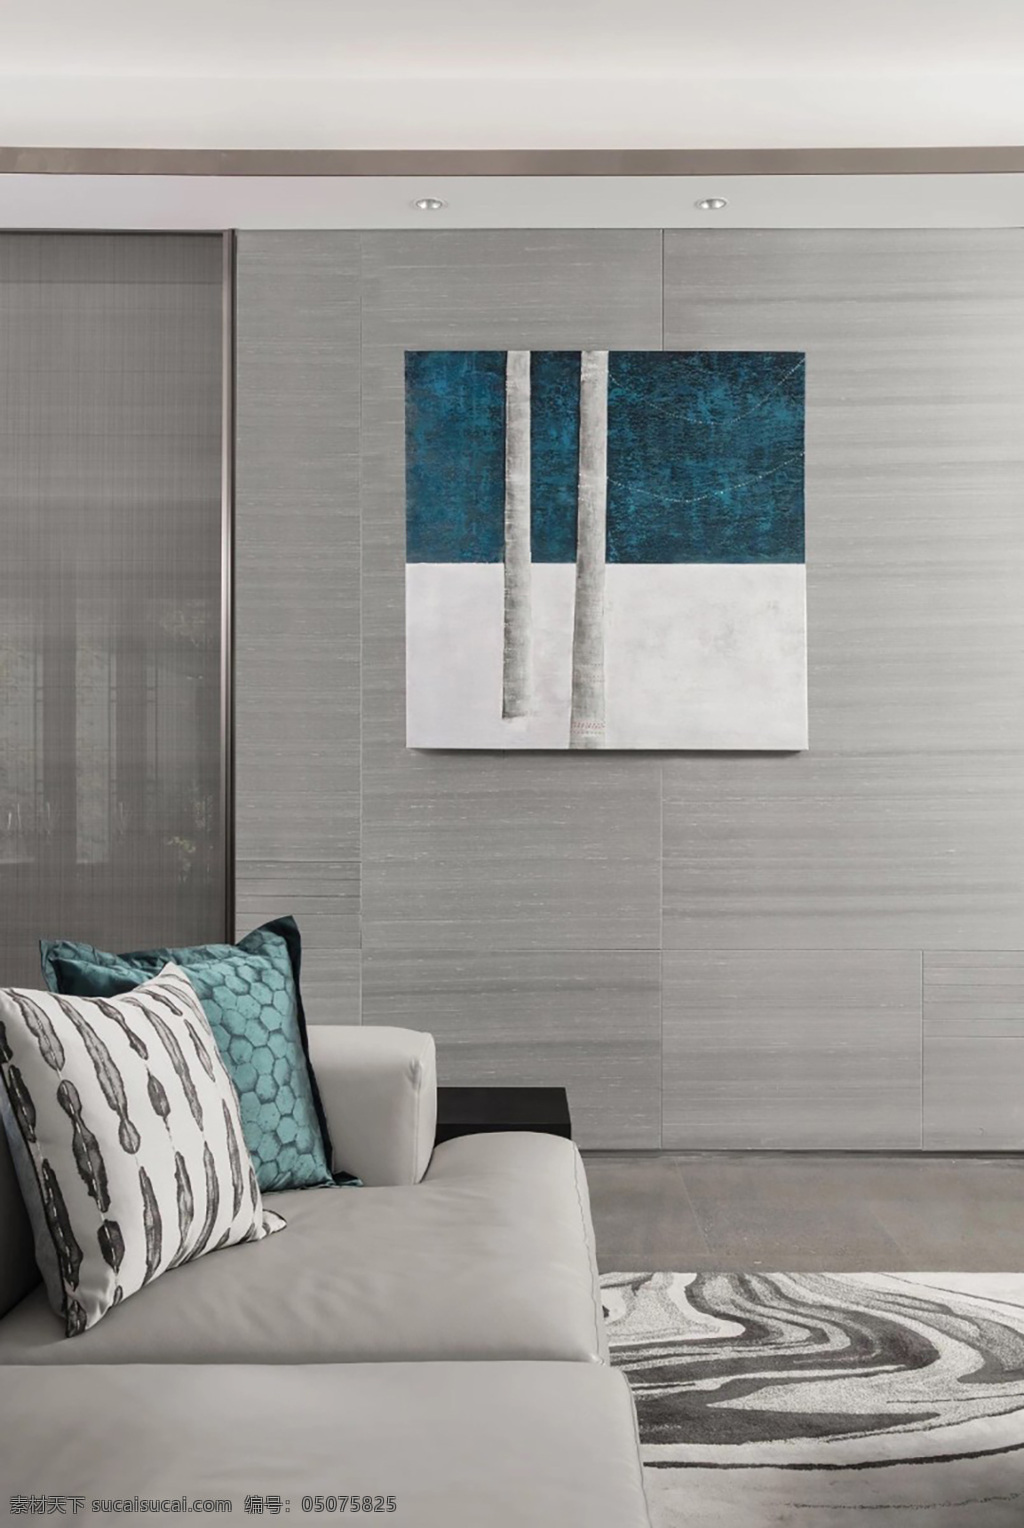 客厅 孔雀蓝 墙纸 墙布 效果图 室内设计 方案 搭配 现代